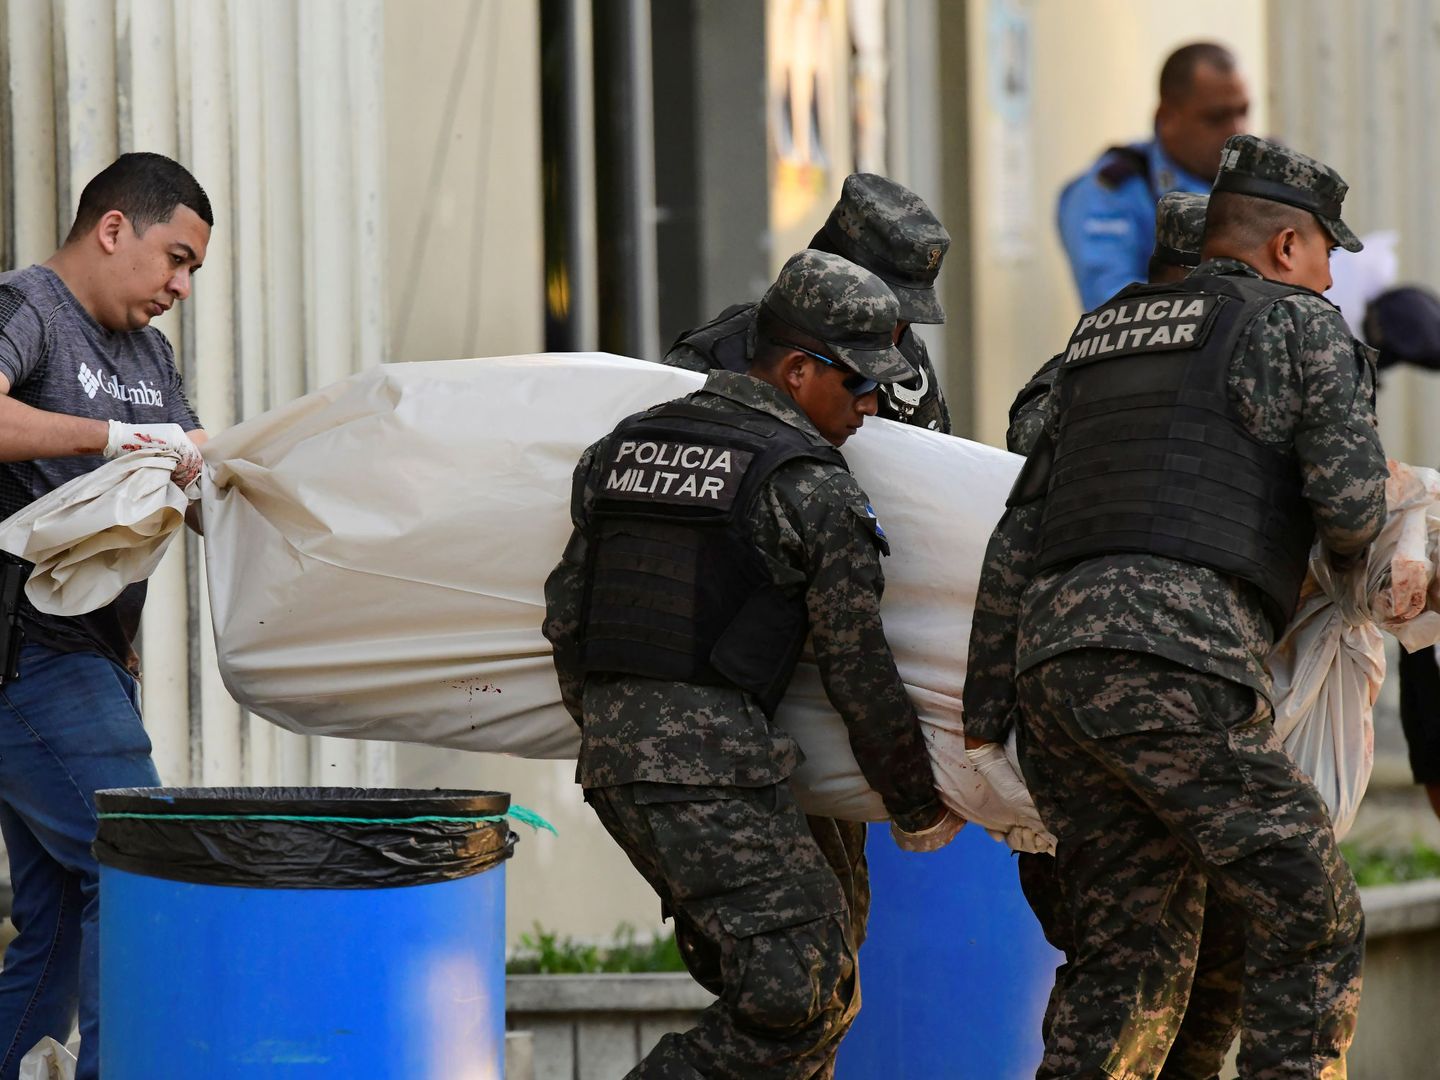 La Policía recoge el cuerpo de uno de los agentes abatidos durante el tiroteo del jueves. Foto: Reuters